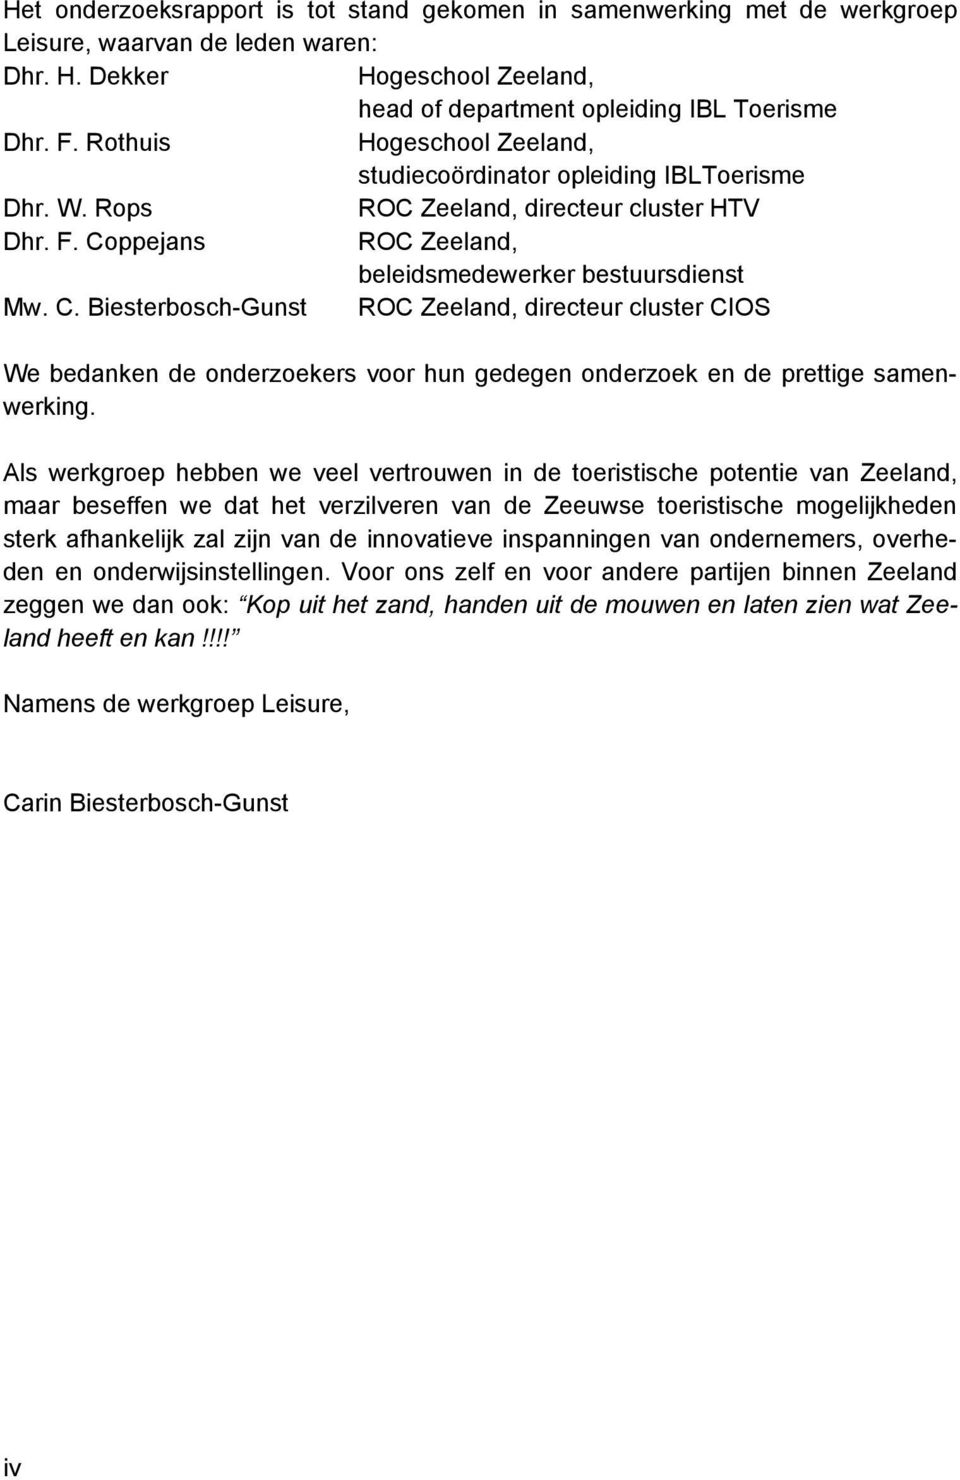 ppejans ROC Zeeland, beleidsmedewerker bestuursdienst Mw. C. Biesterbosch-Gunst ROC Zeeland, directeur cluster CIOS We bedanken de onderzoekers voor hun gedegen onderzoek en de prettige samenwerking.